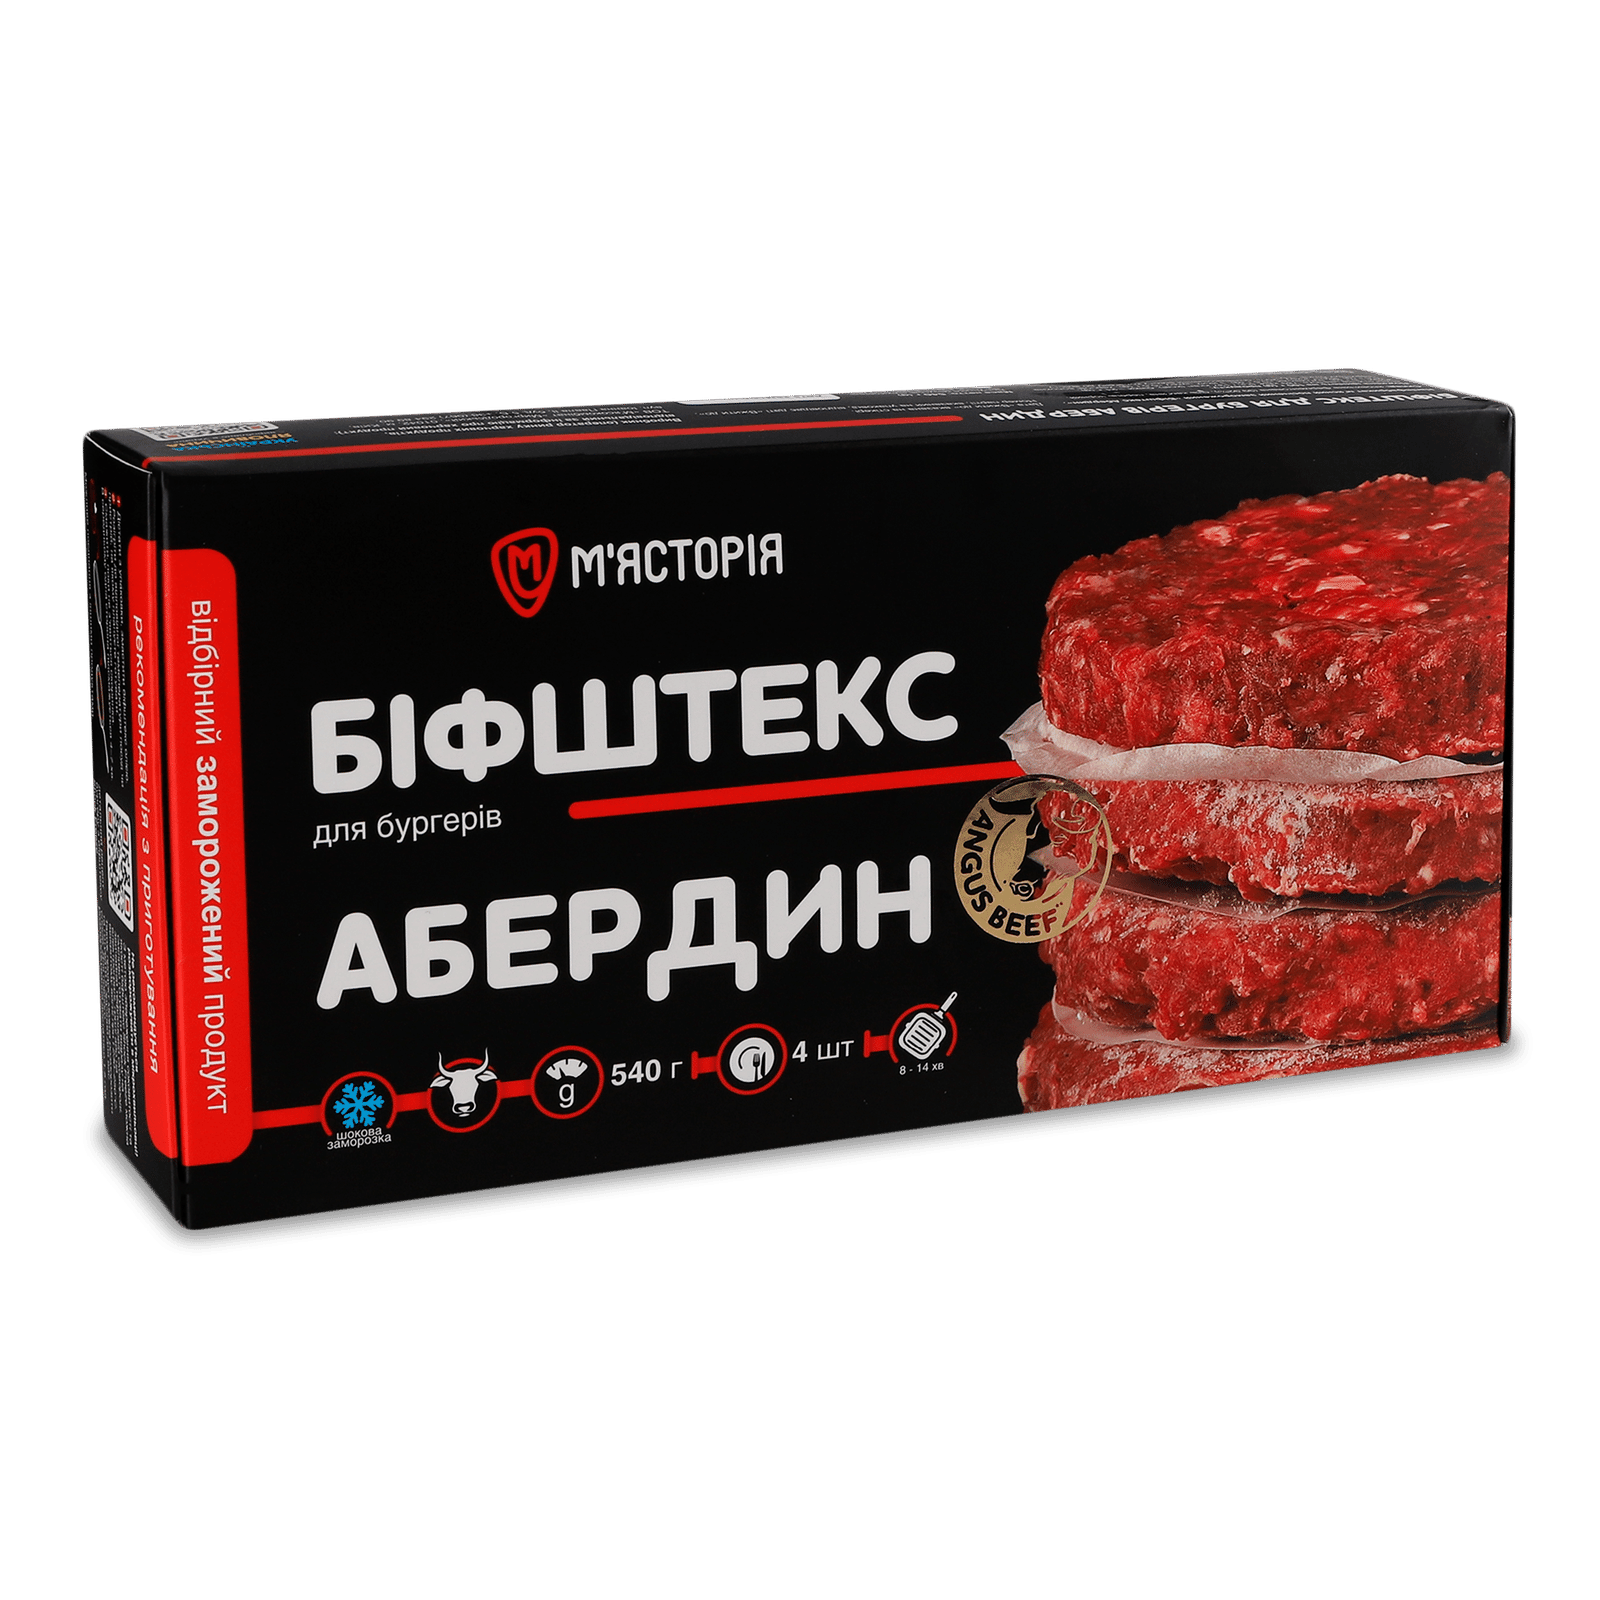 Біфштекс «М'ясторія» «Абердин» з яловичини шок-фриз - 1